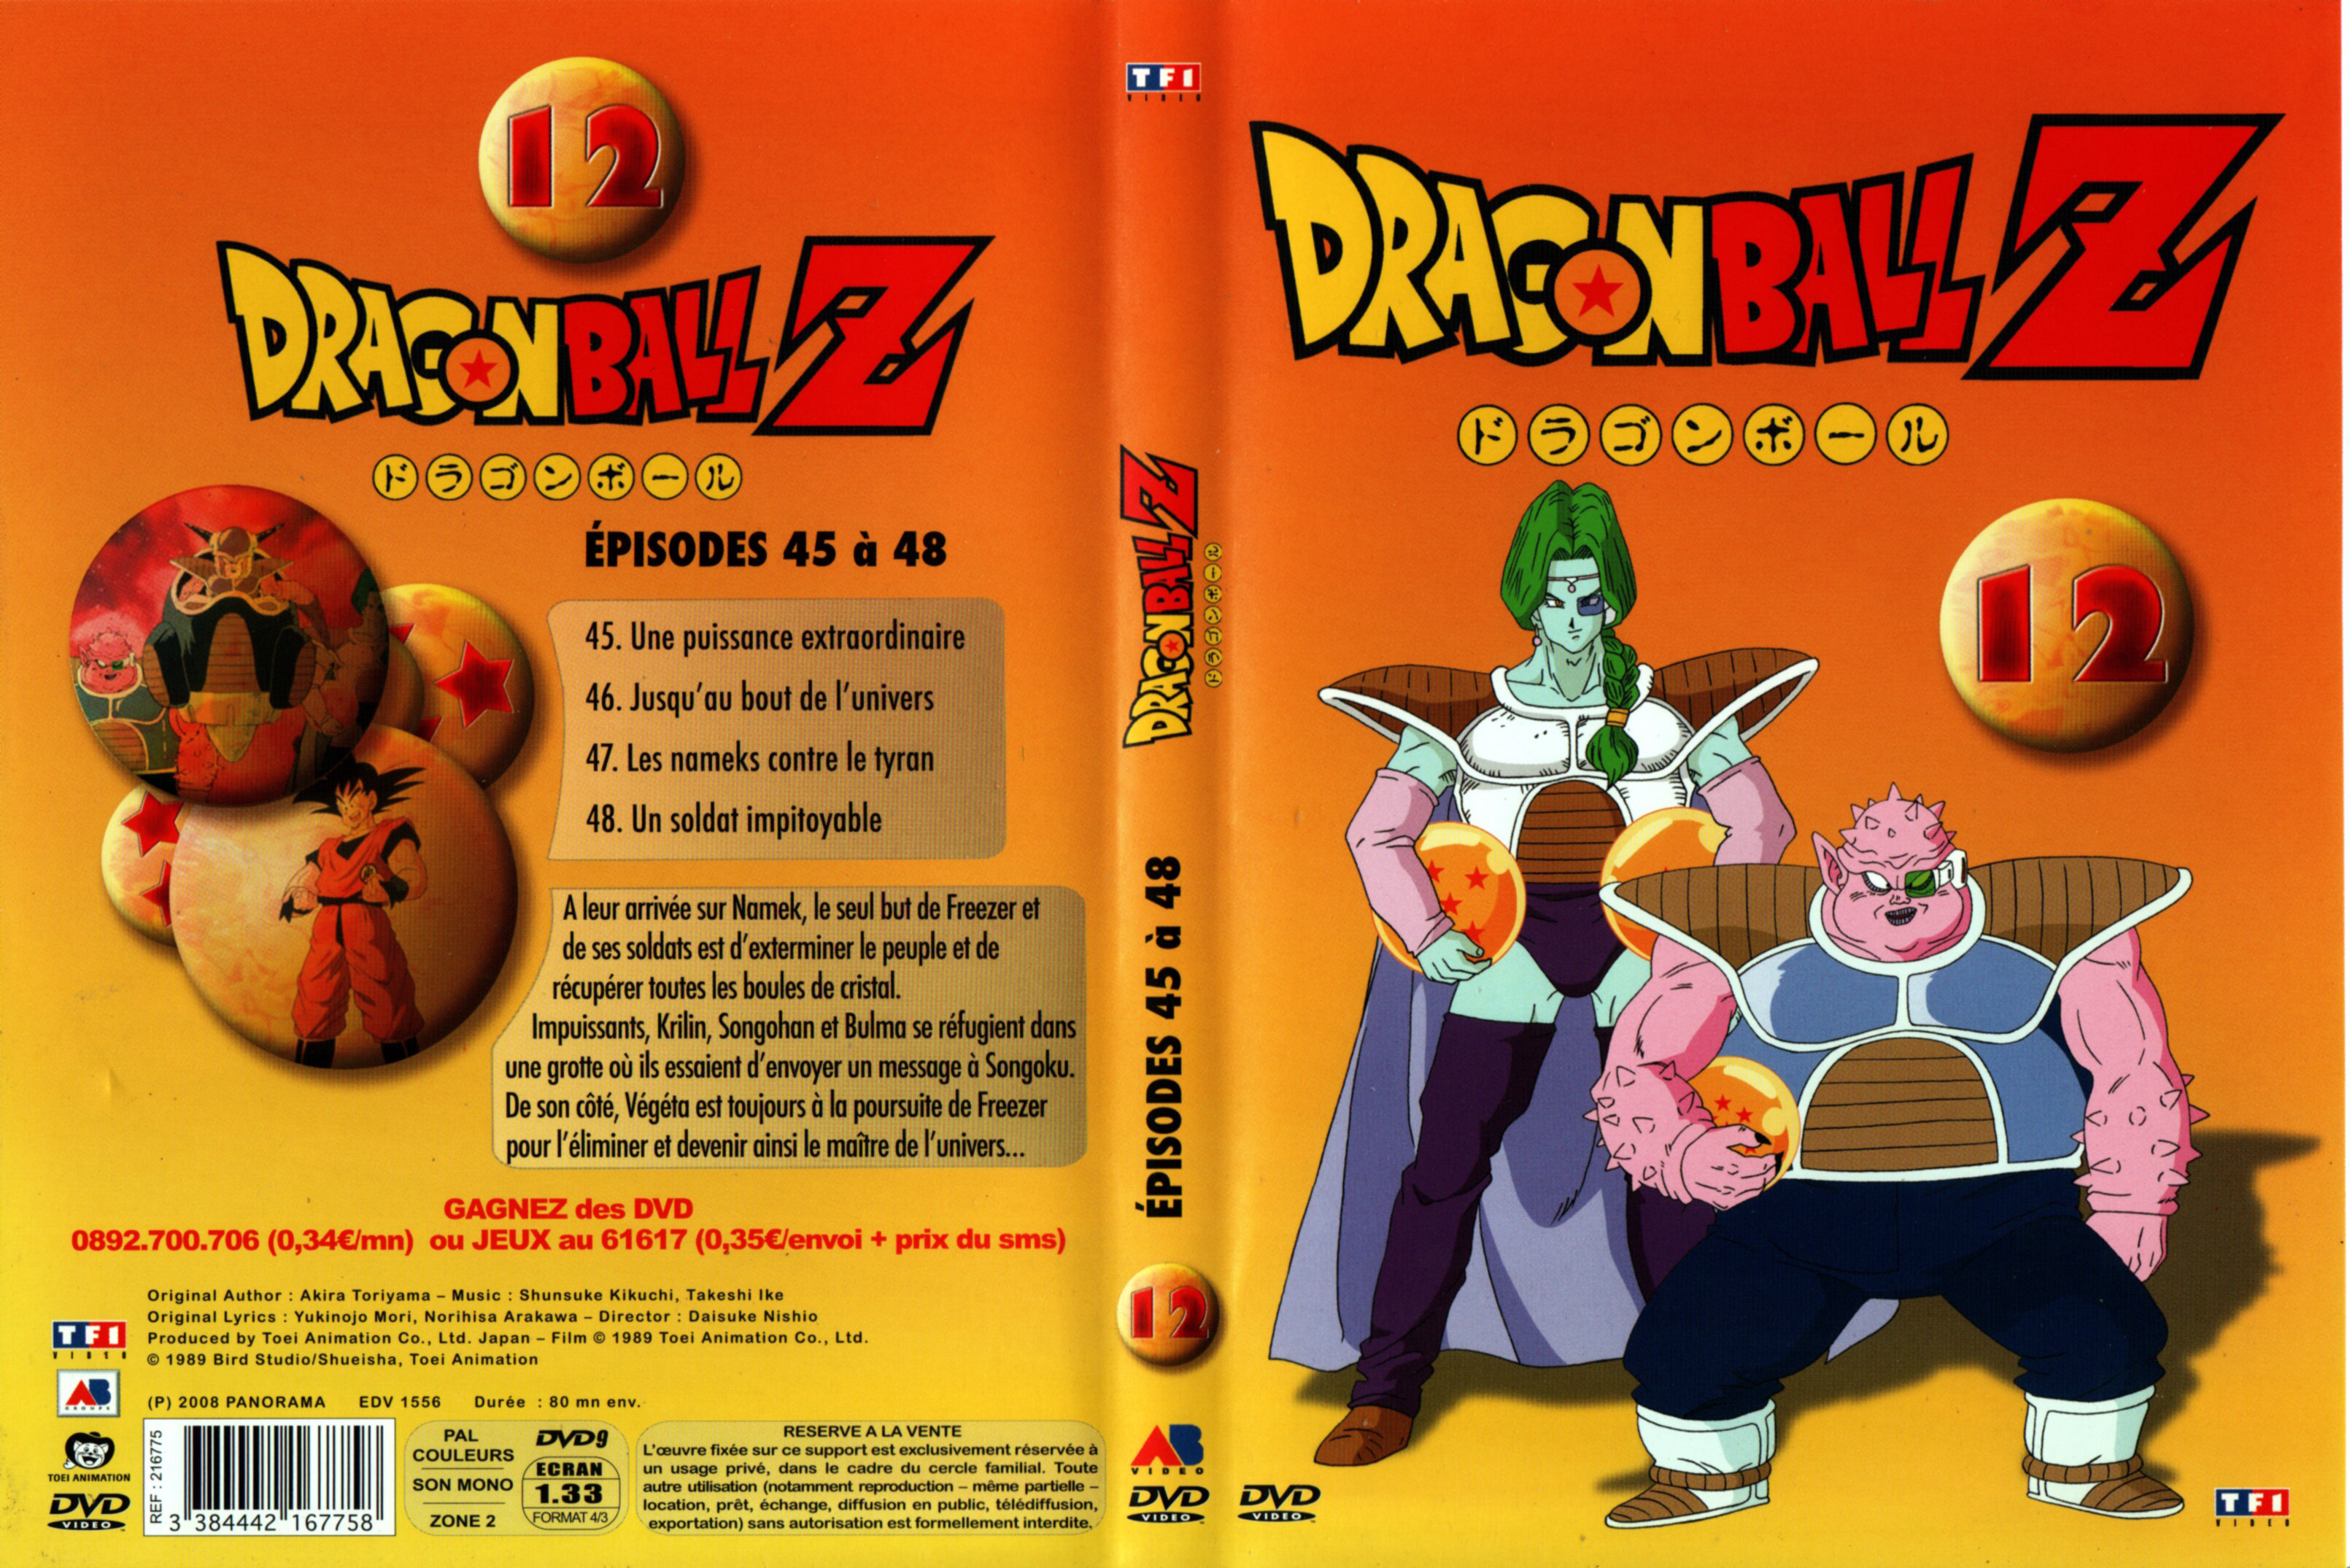 Jaquette DVD Dragon Ball Z vol 12 v2